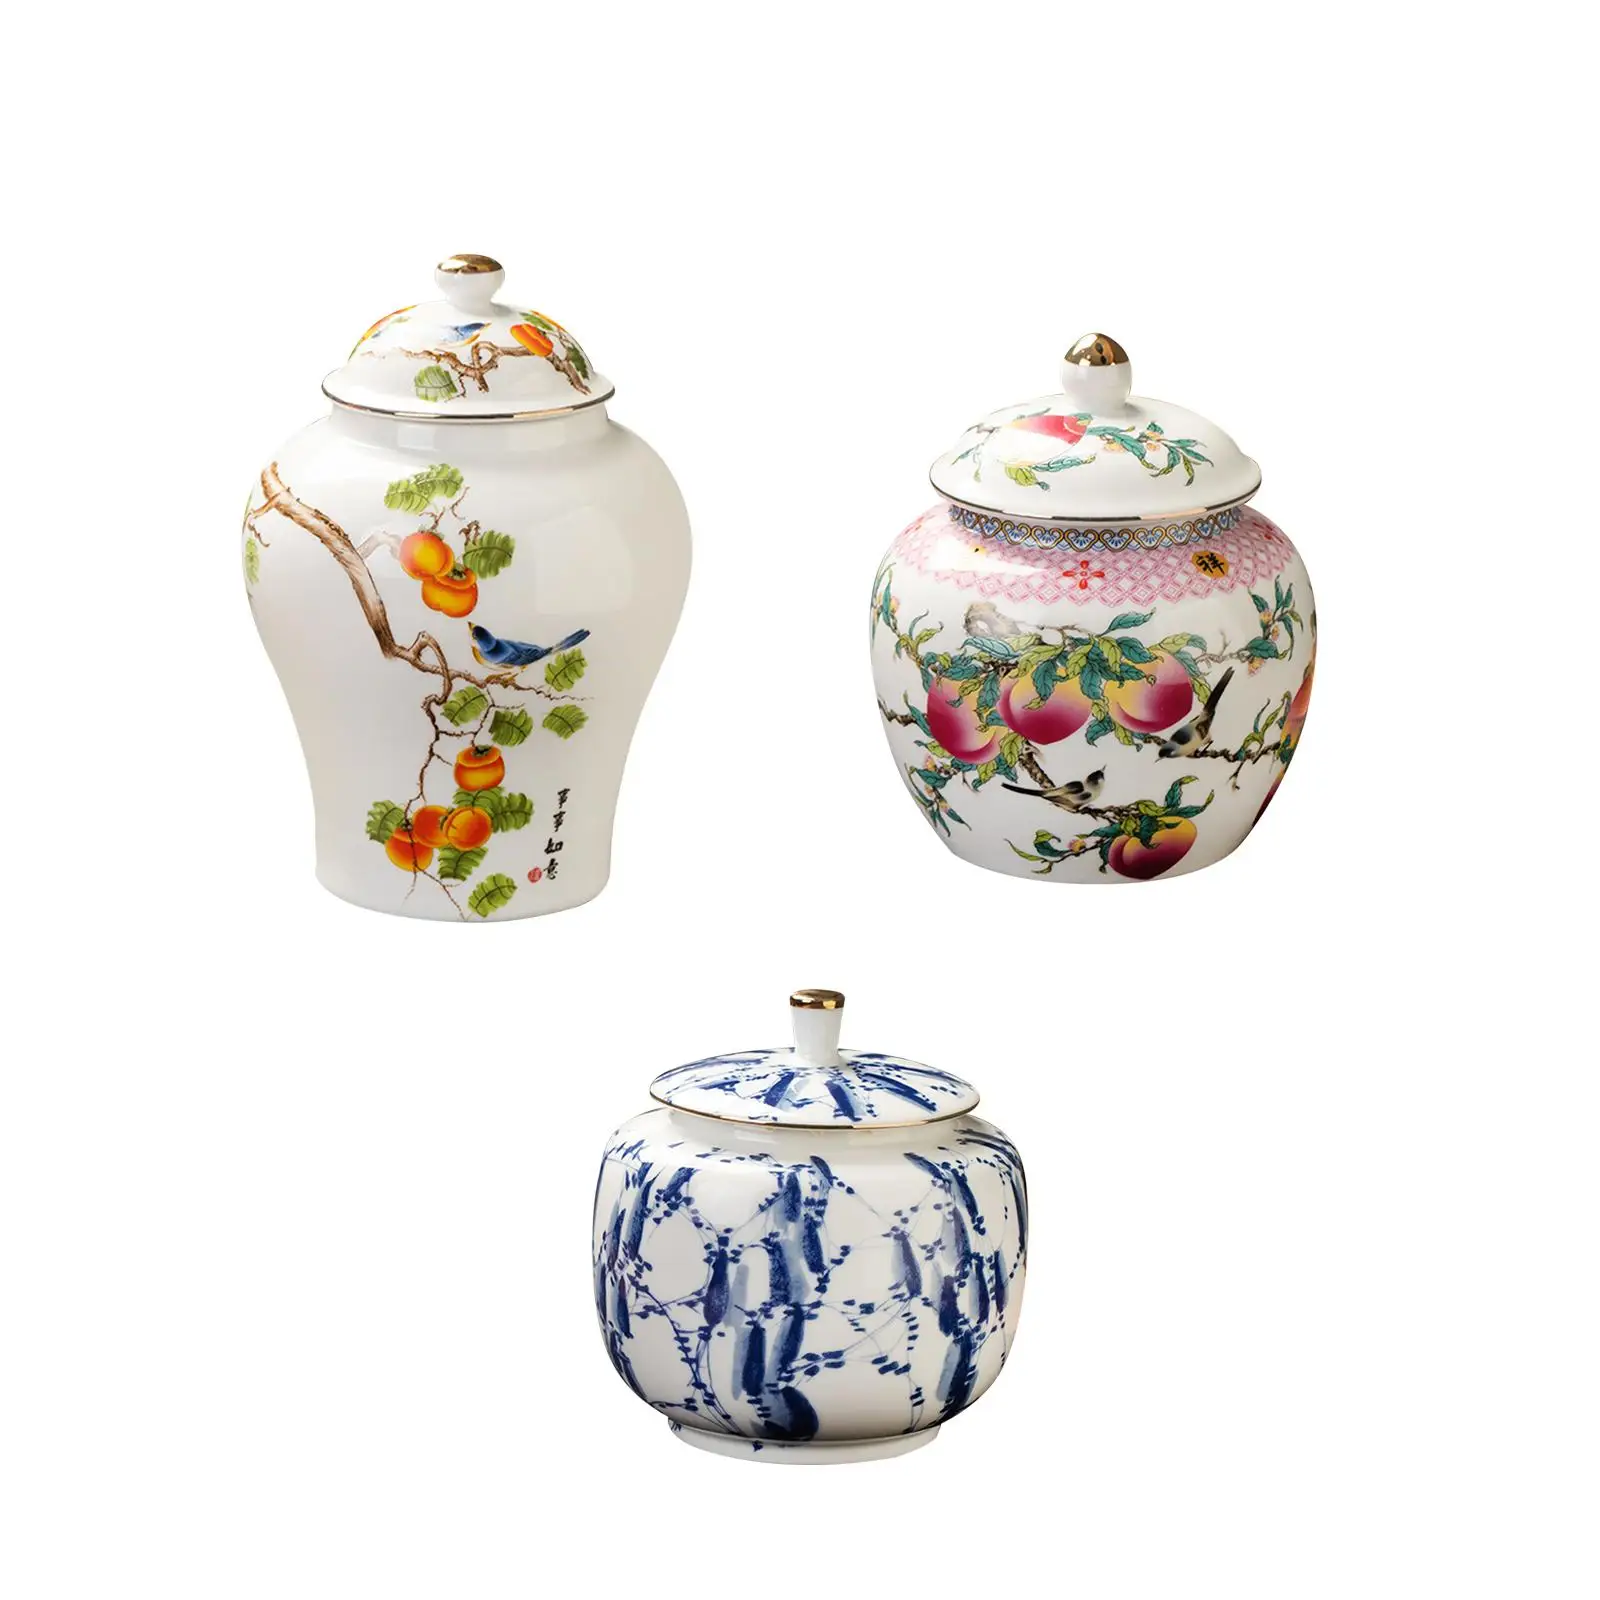 Porcelain Temple Jar Delicate Traditional Ceramic Ginger Jar with Lid Decorative Vase for Desktop Living Room Home Decor